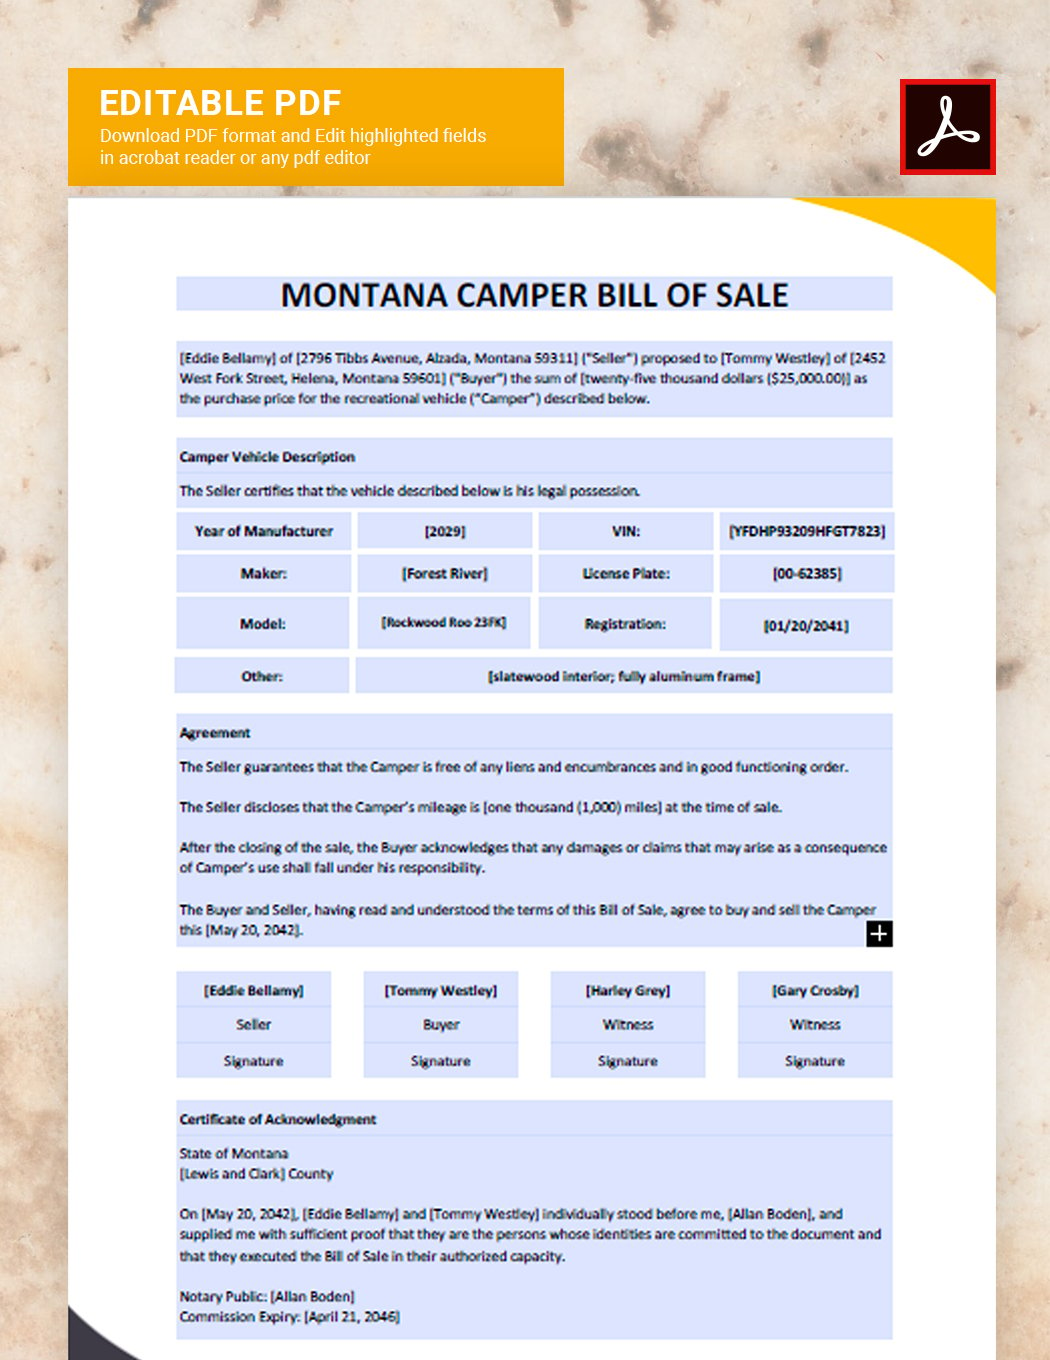 Montana Camper Bill of Sale Template